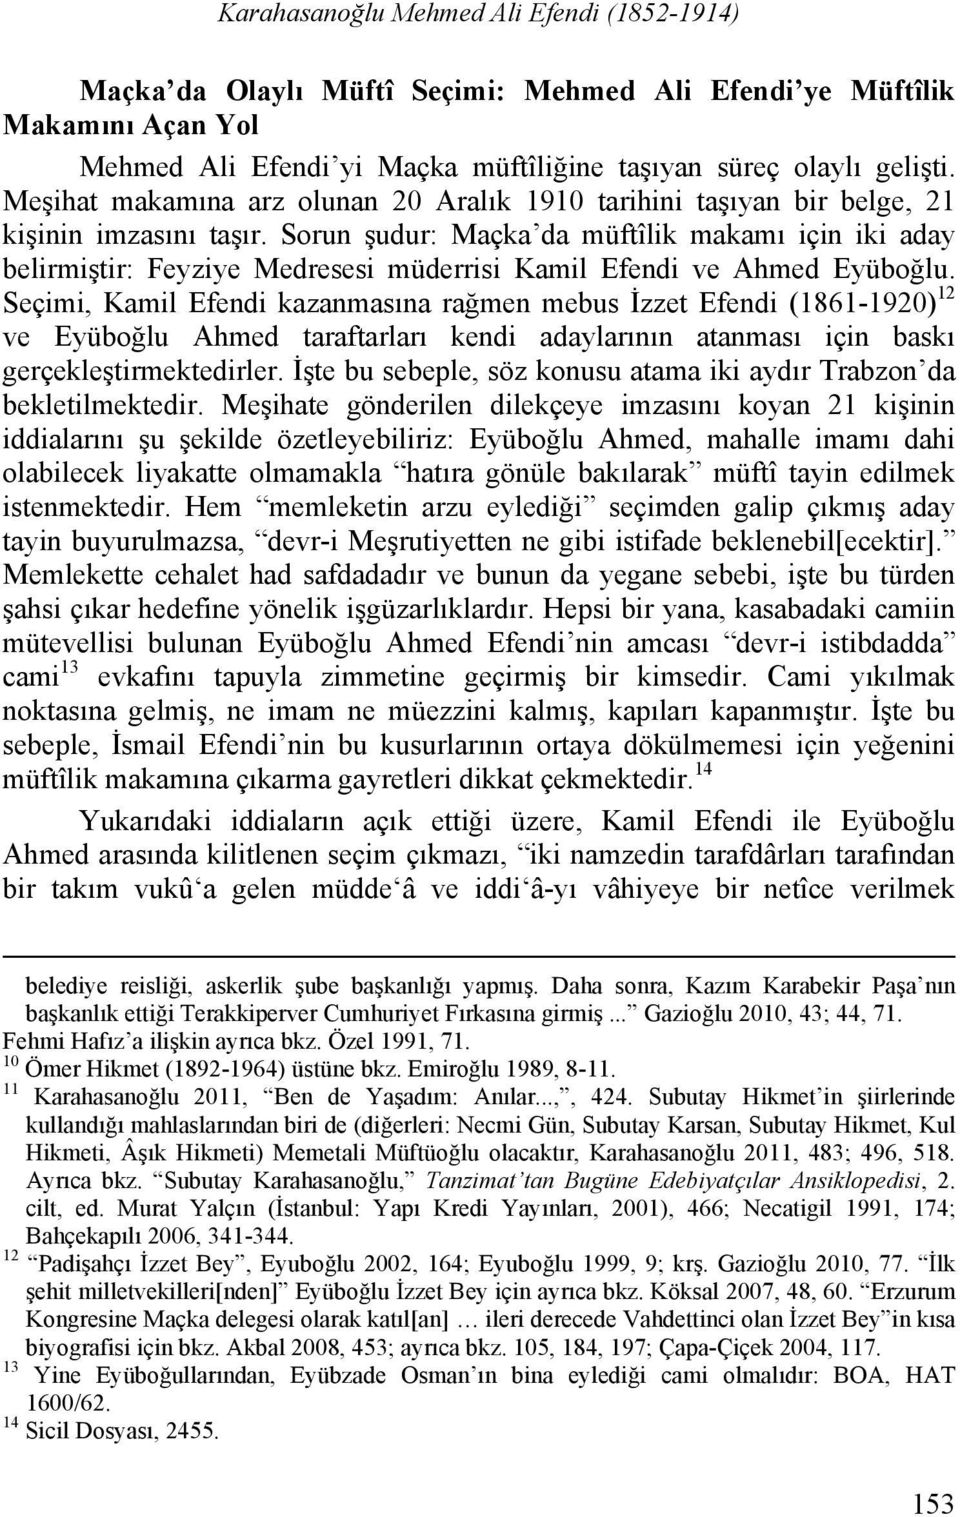 Sorun şudur: Maçka da müftîlik makamı için iki aday belirmiştir: Feyziye Medresesi müderrisi Kamil Efendi ve Ahmed Eyüboğlu.